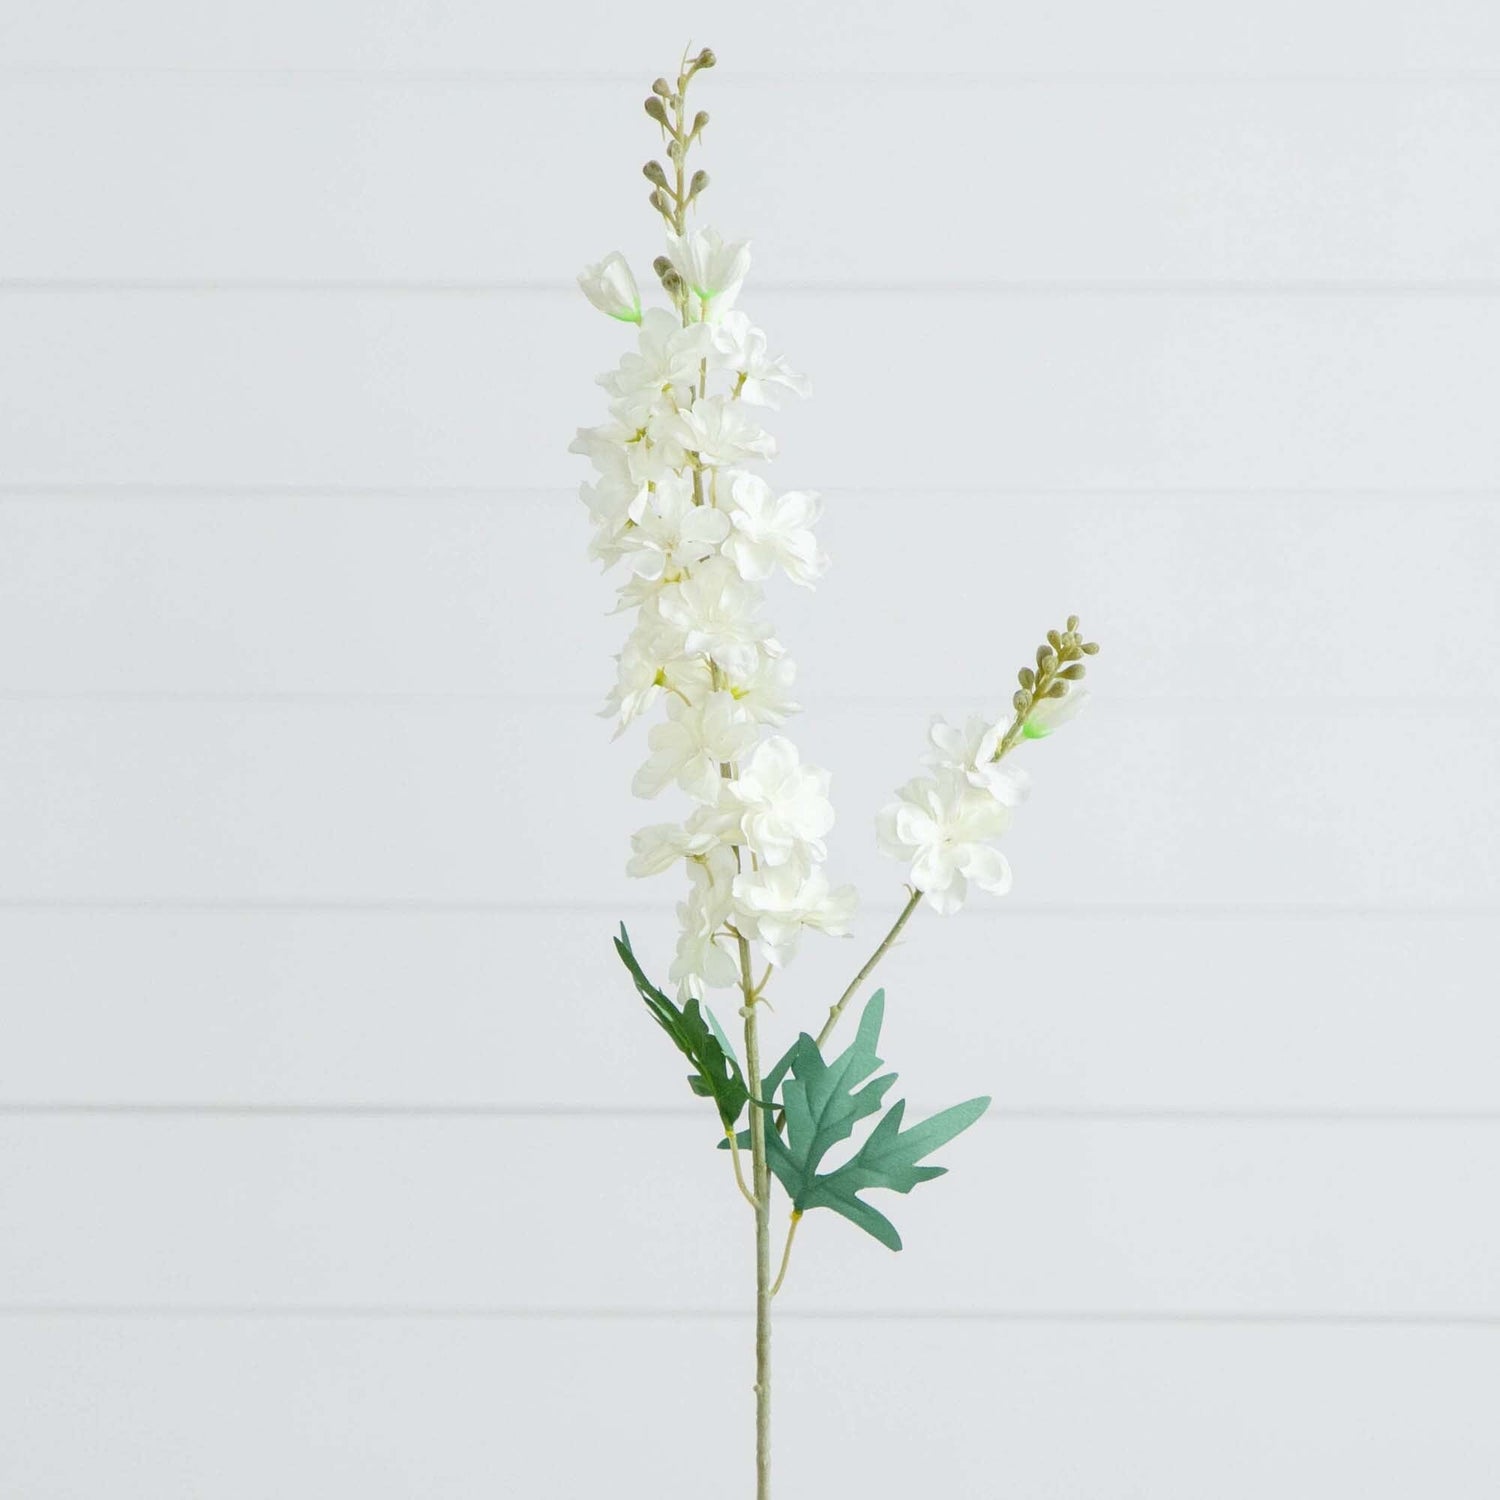 33" Artificial Delphinium Flower Stems- Set of 3